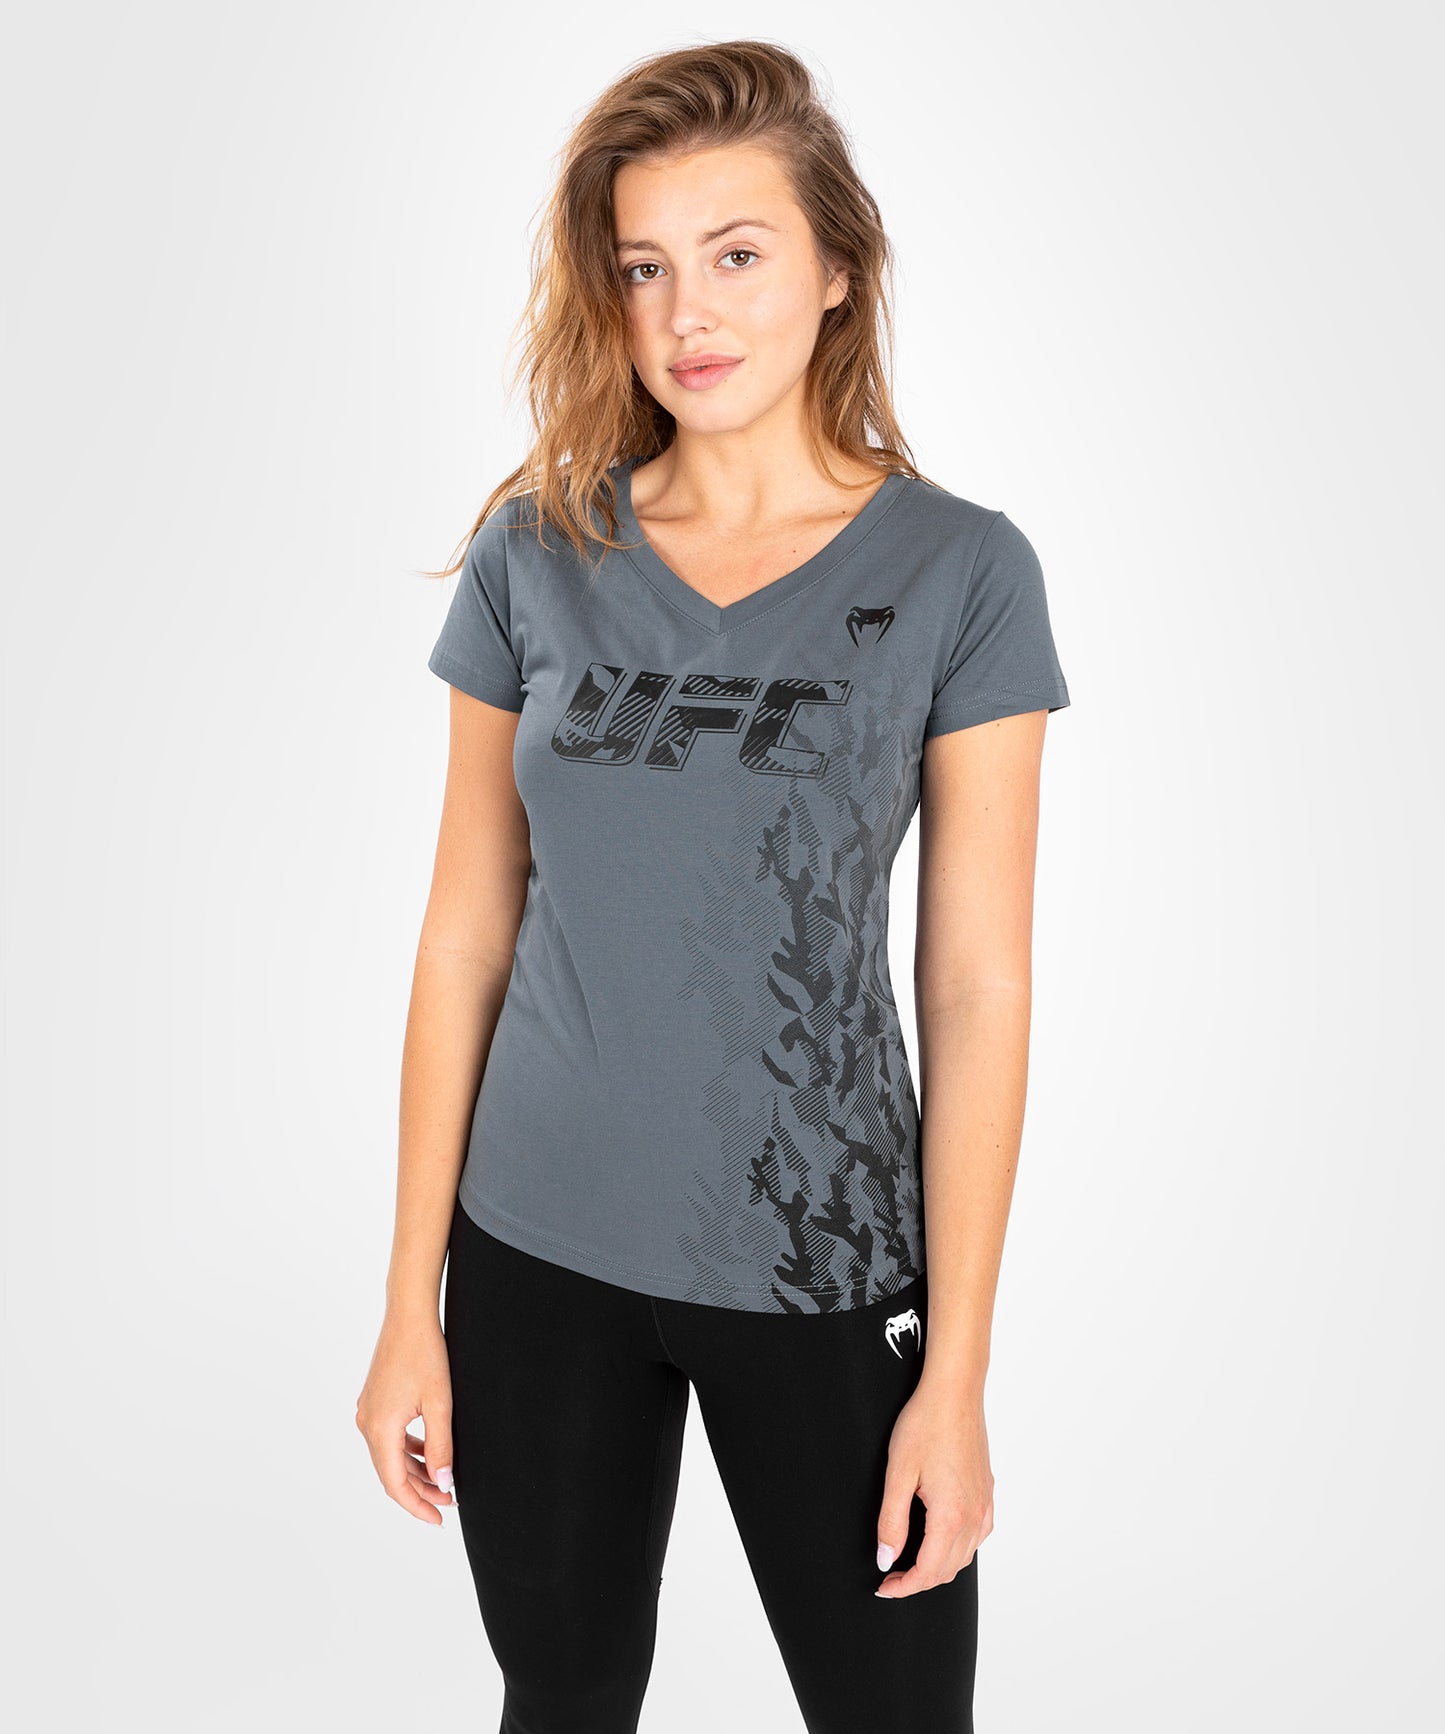 T-shirt Manches Courtes Femme UFC Venum Authentic Fight Week - Gris